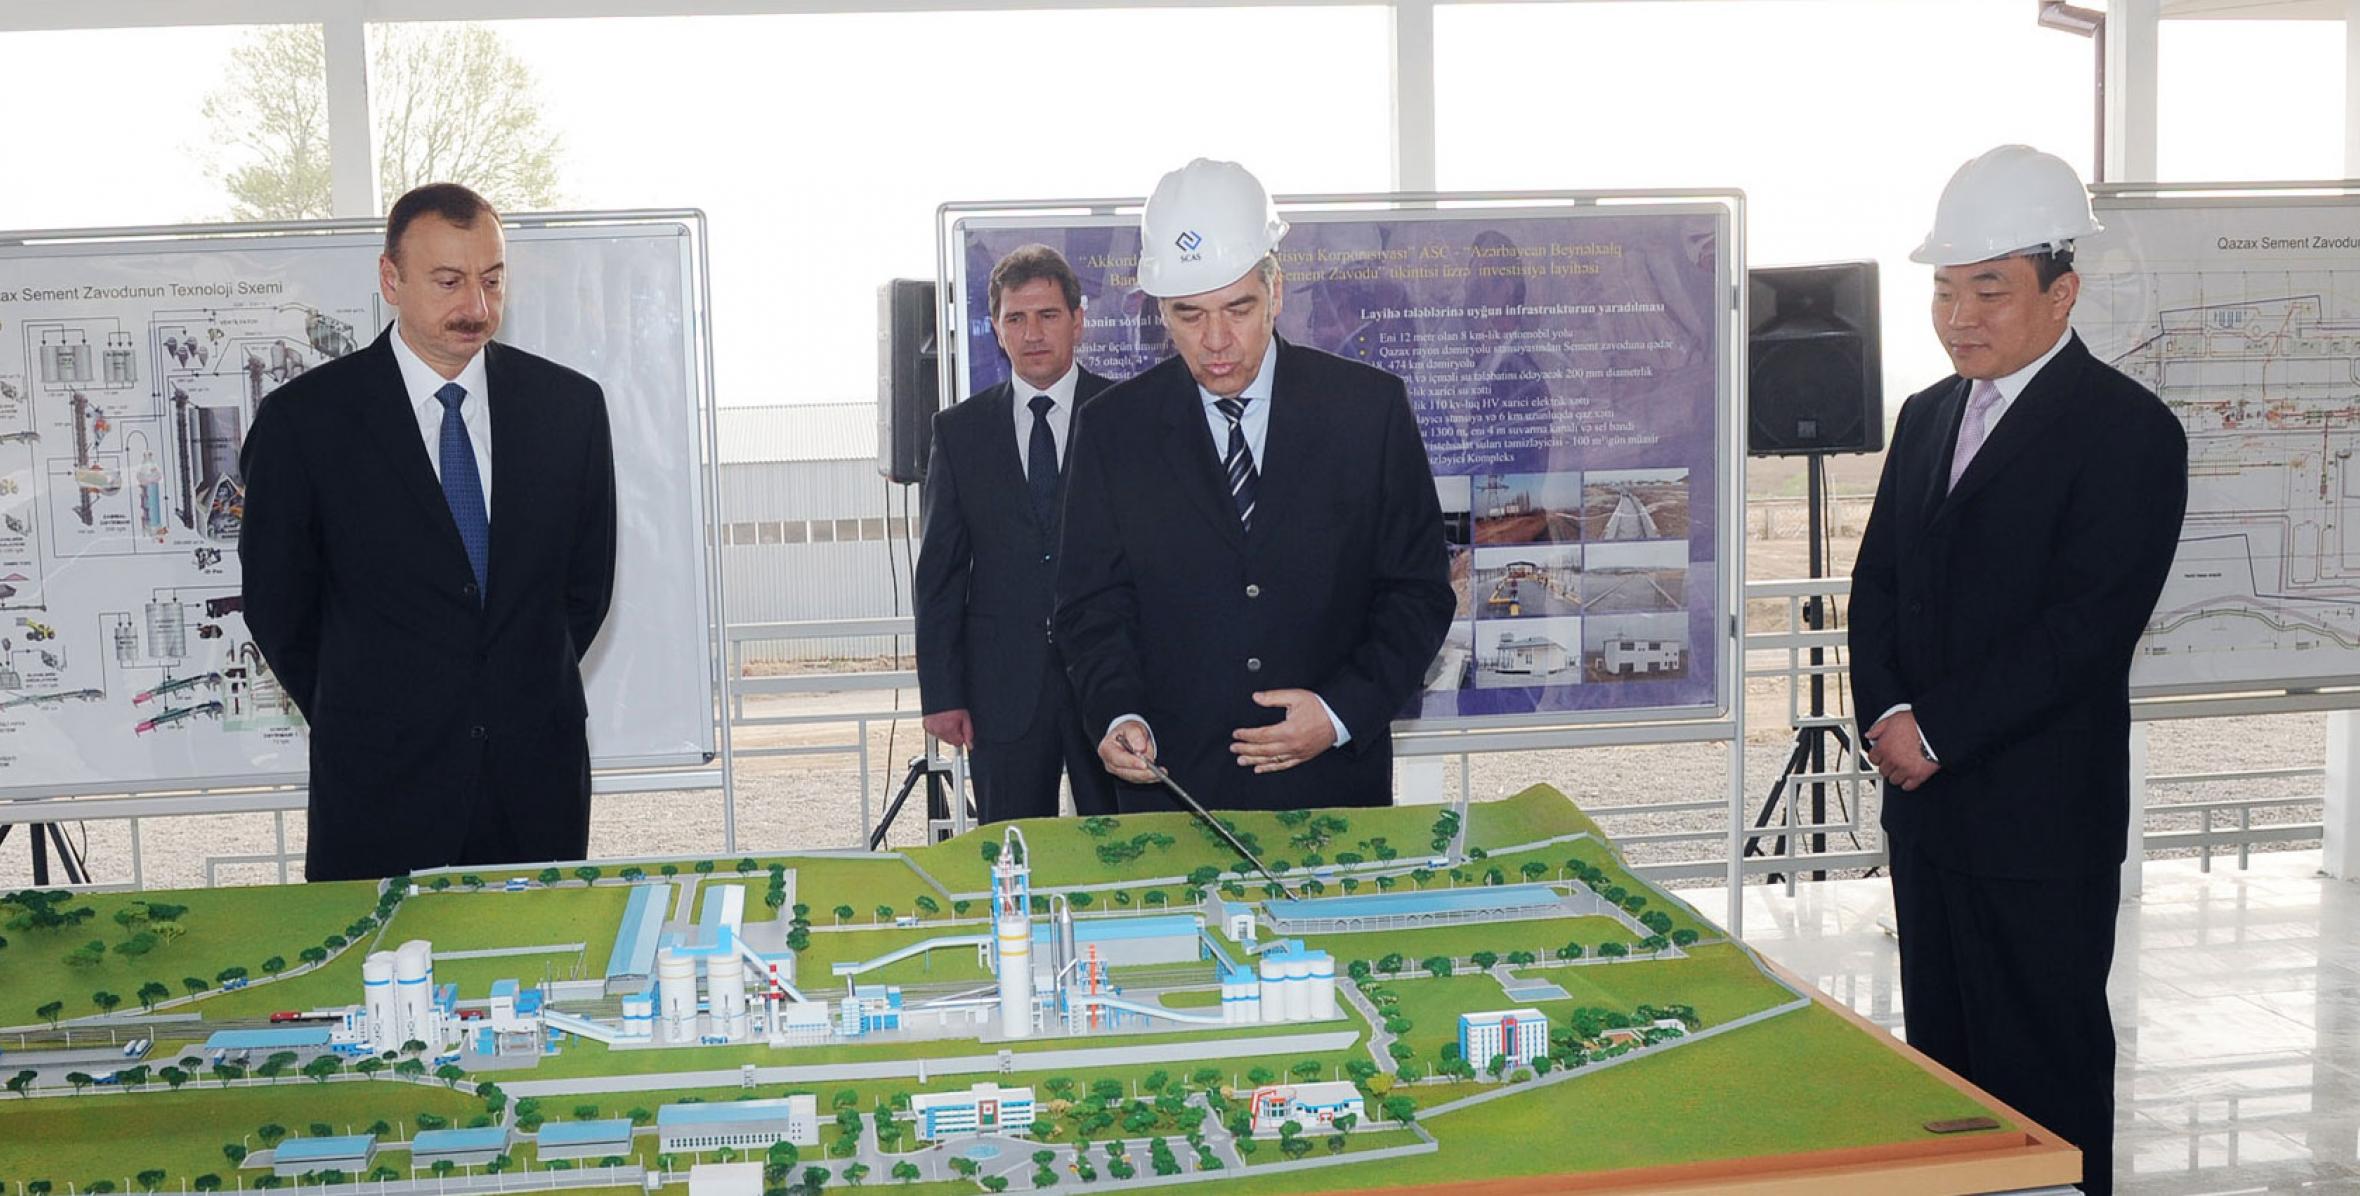 İlham Əliyev inşası davam etdirilən Qazax sement zavodu ilə tanış olmuşdur